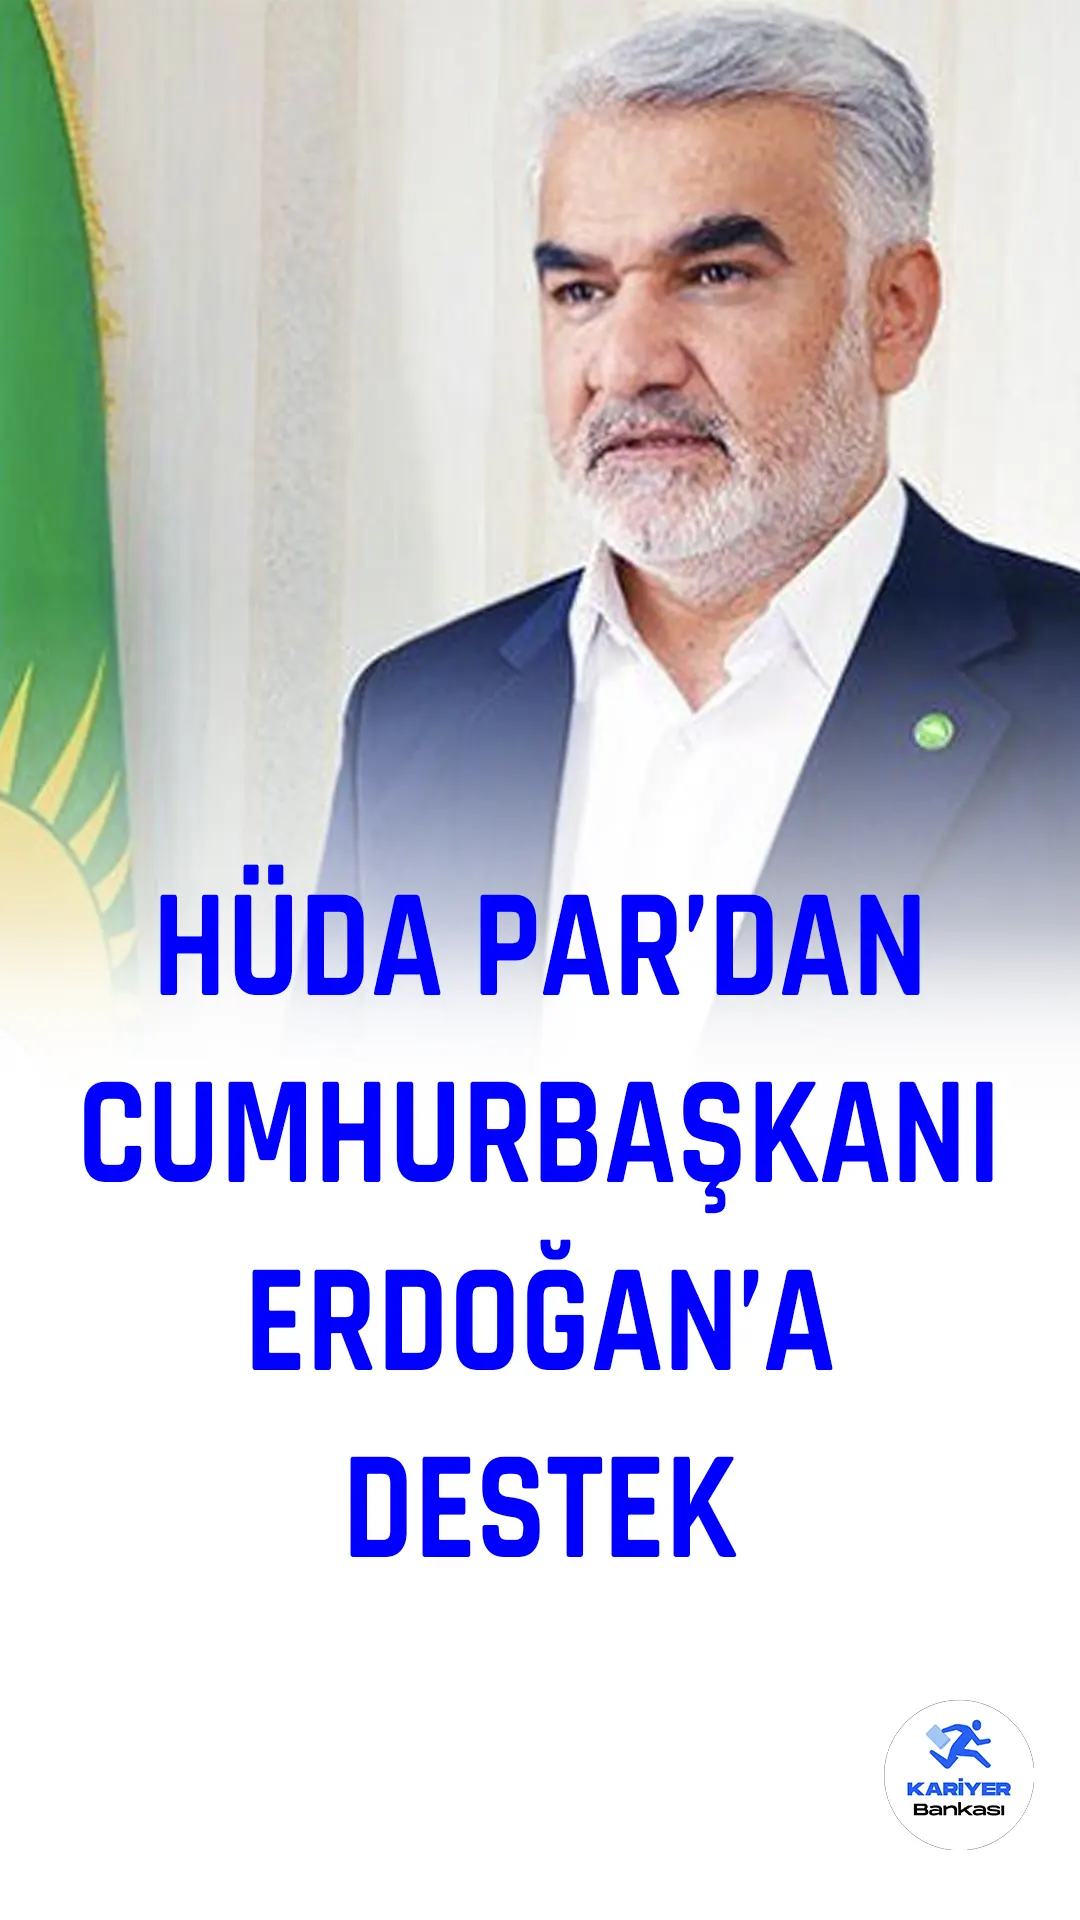 Hür Dava Partisi (HÜDA PAR) Genel Başkanı Zekeriya Yapıcıoğlu, parti adayı çıkarmayacaklarını ve 2023 Cumhurbaşkanlığı seçiminde Cumhur İttifakı adayı Recep Tayyip Erdoğan'ı destekleyeceklerini açıkladı.